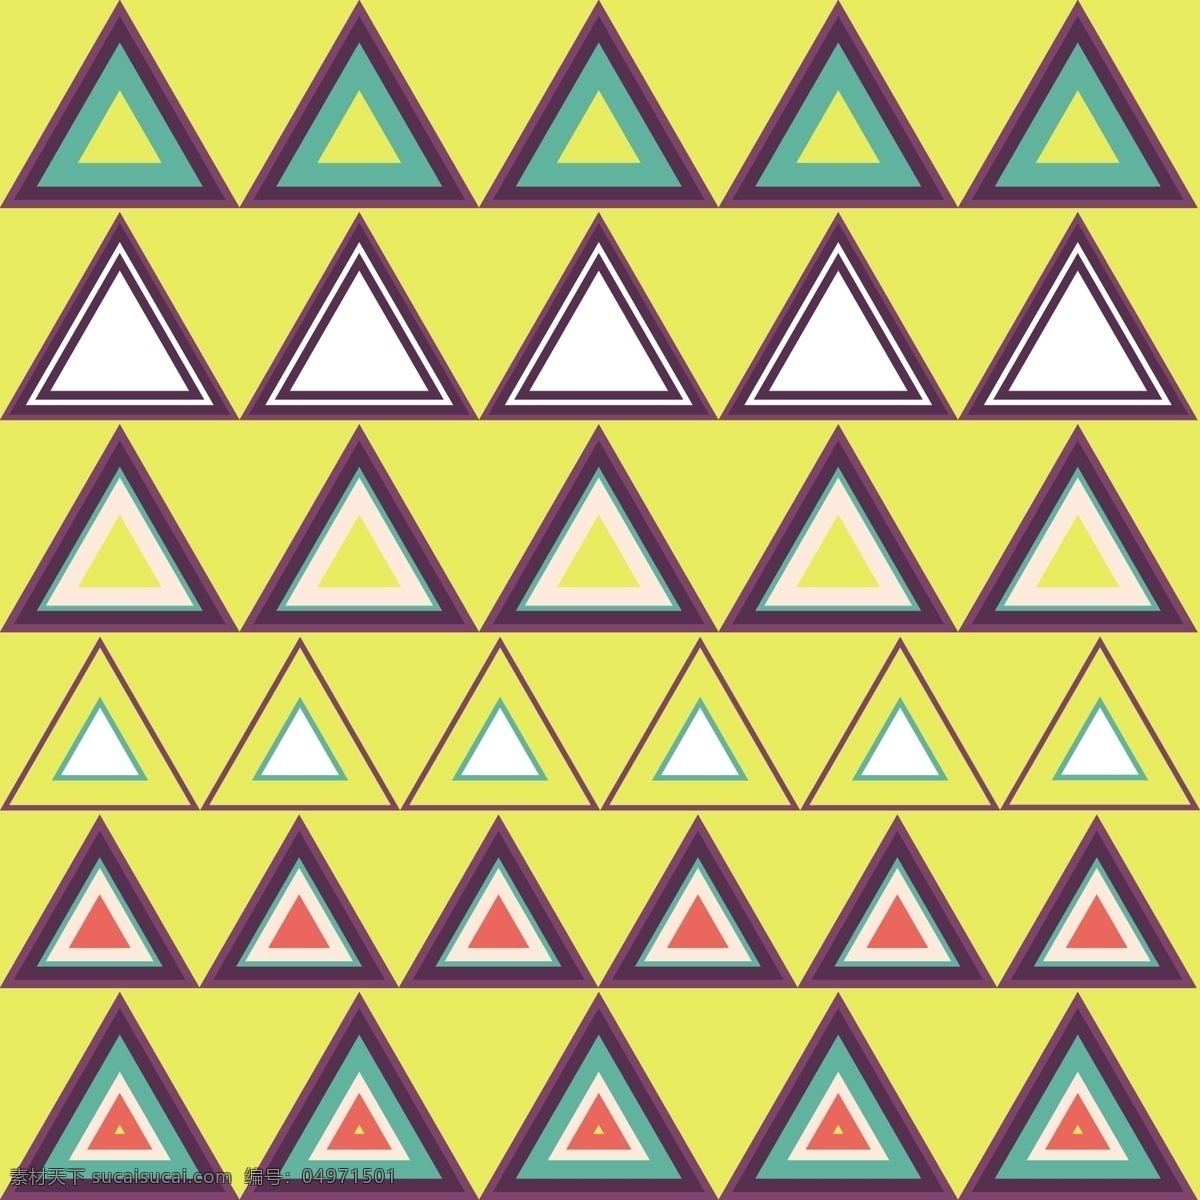 几何组合 几何图案 几何花纹 几何背景 几何拼接 底纹边框 条纹线条 矢量卡通 卡通设计 黄色